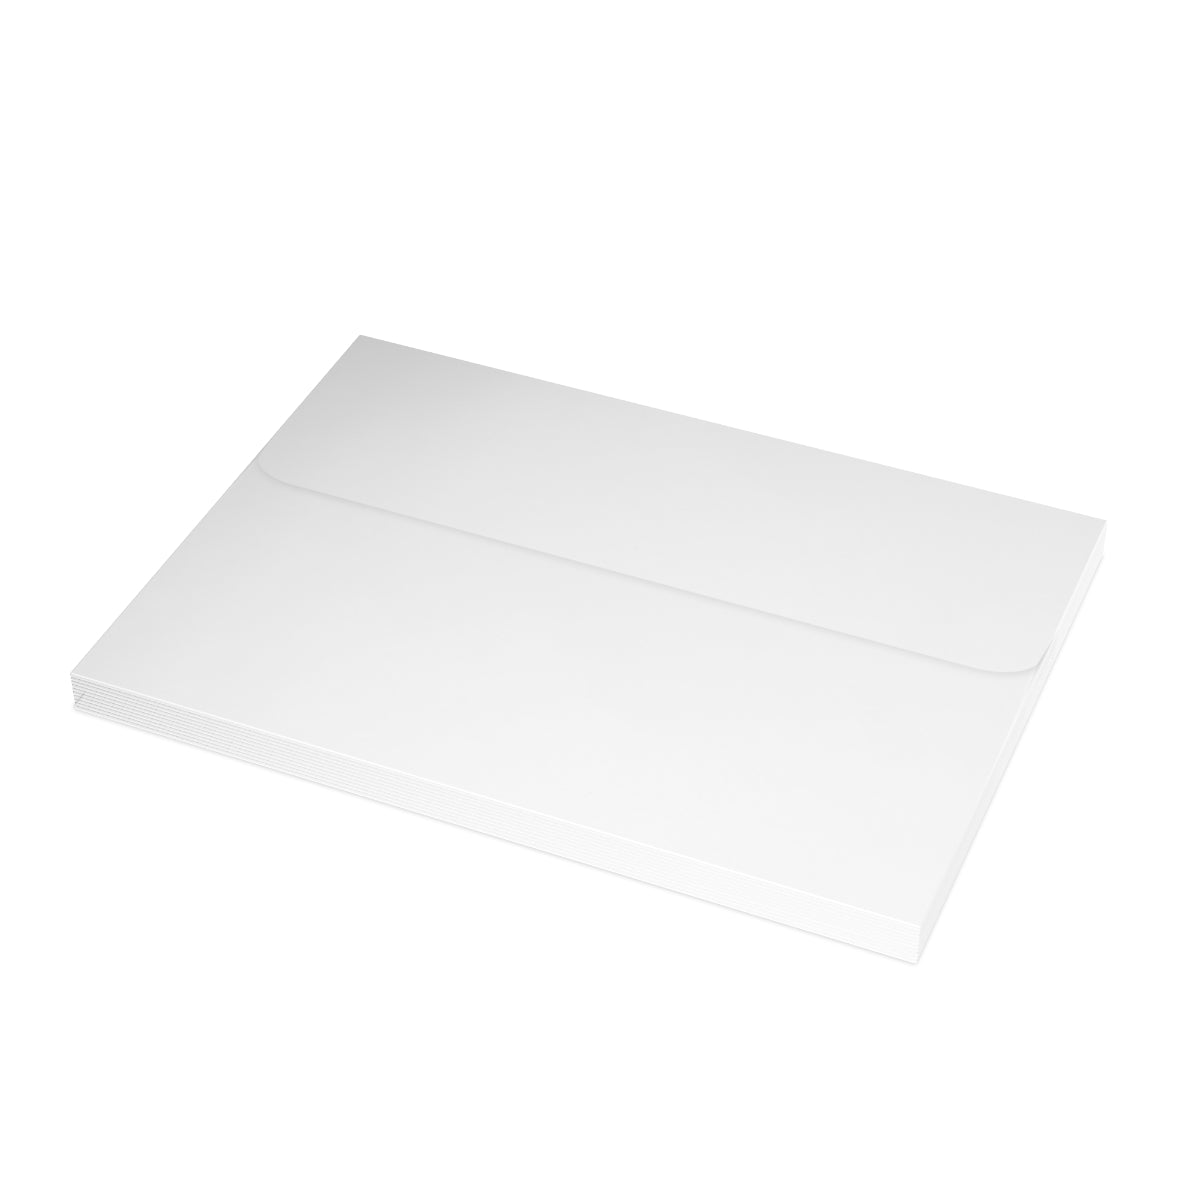 Narragansett gefaltete matte Notizkarten + Umschläge (10 Stück)